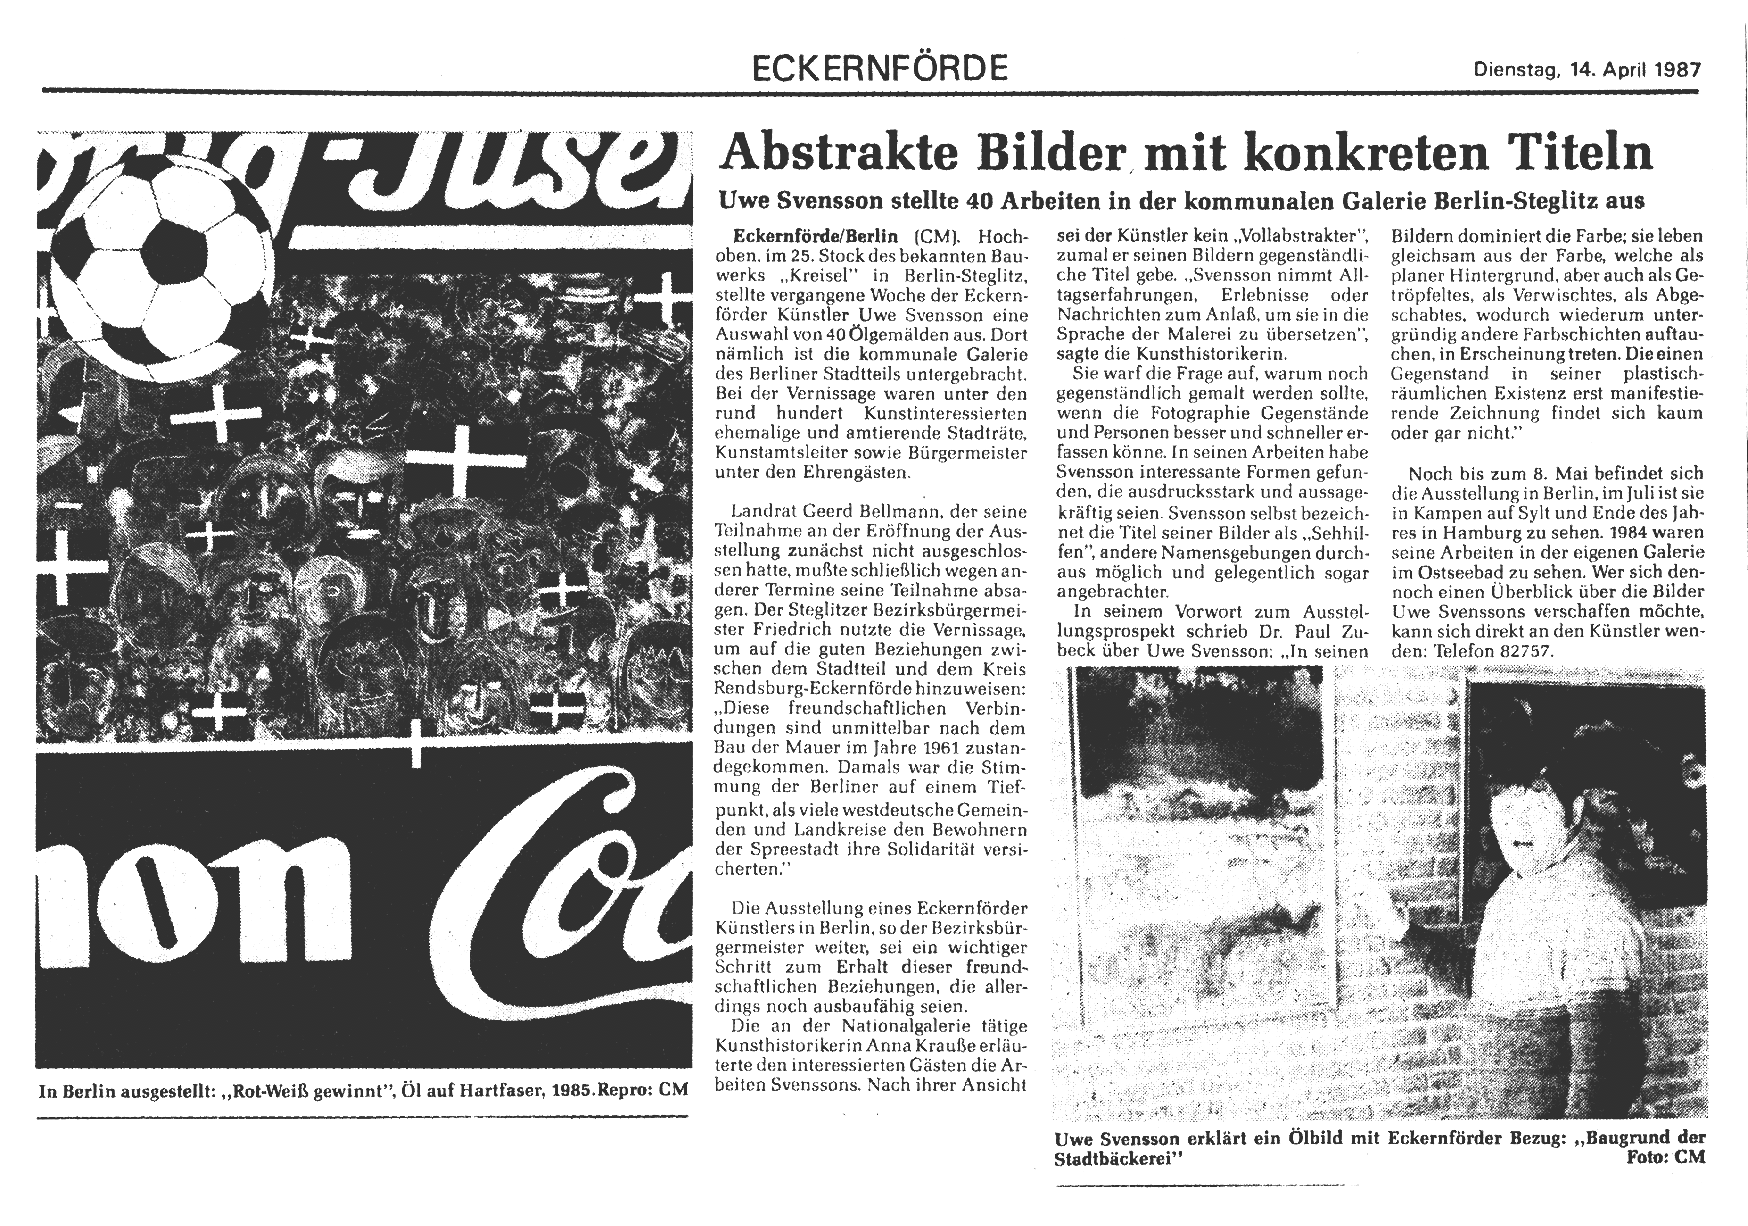 14.04.1987, Abstrakte Bilder mit konkreten Titeln